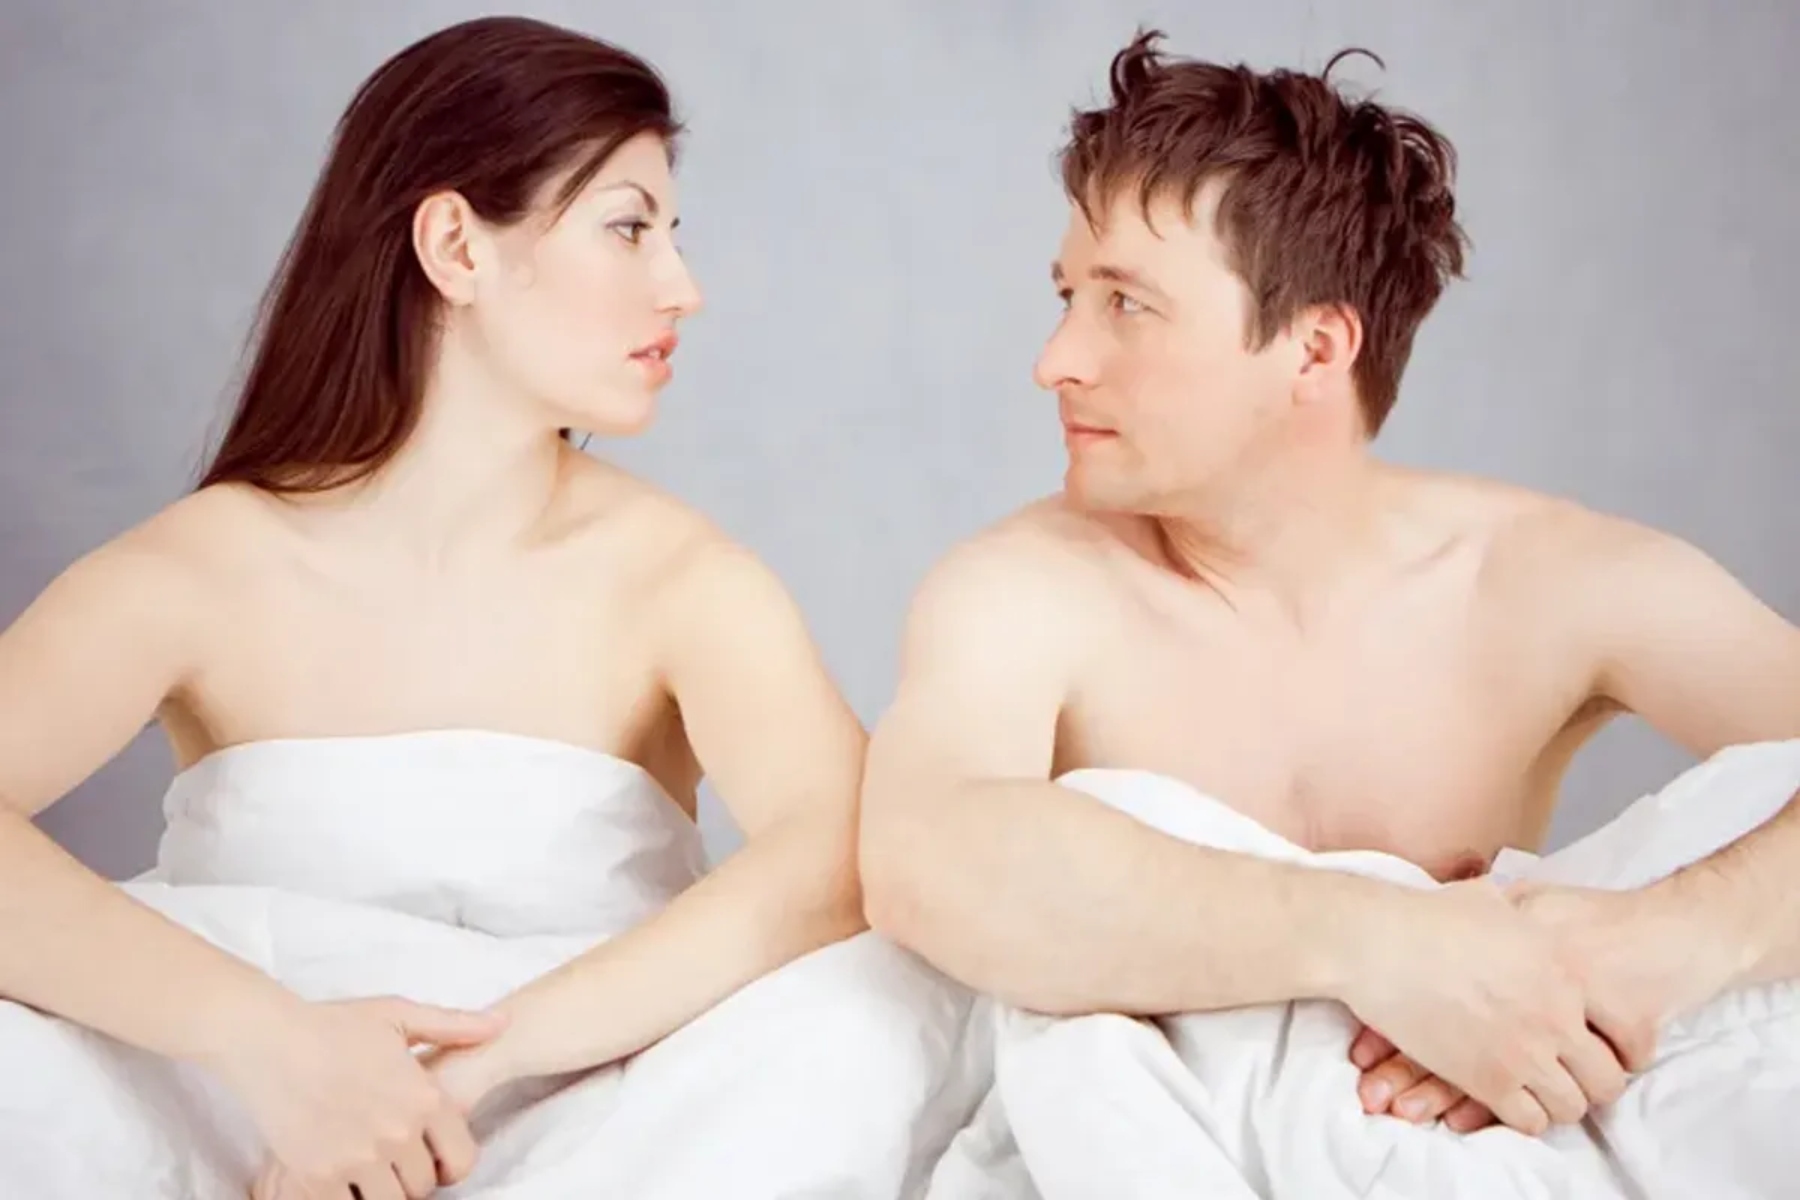 Σεξ καυγάς: Μπορεί το σεξ μετά από ένα καυγά να θεραπεύσει ή να βλάψει τη σχέση σας;